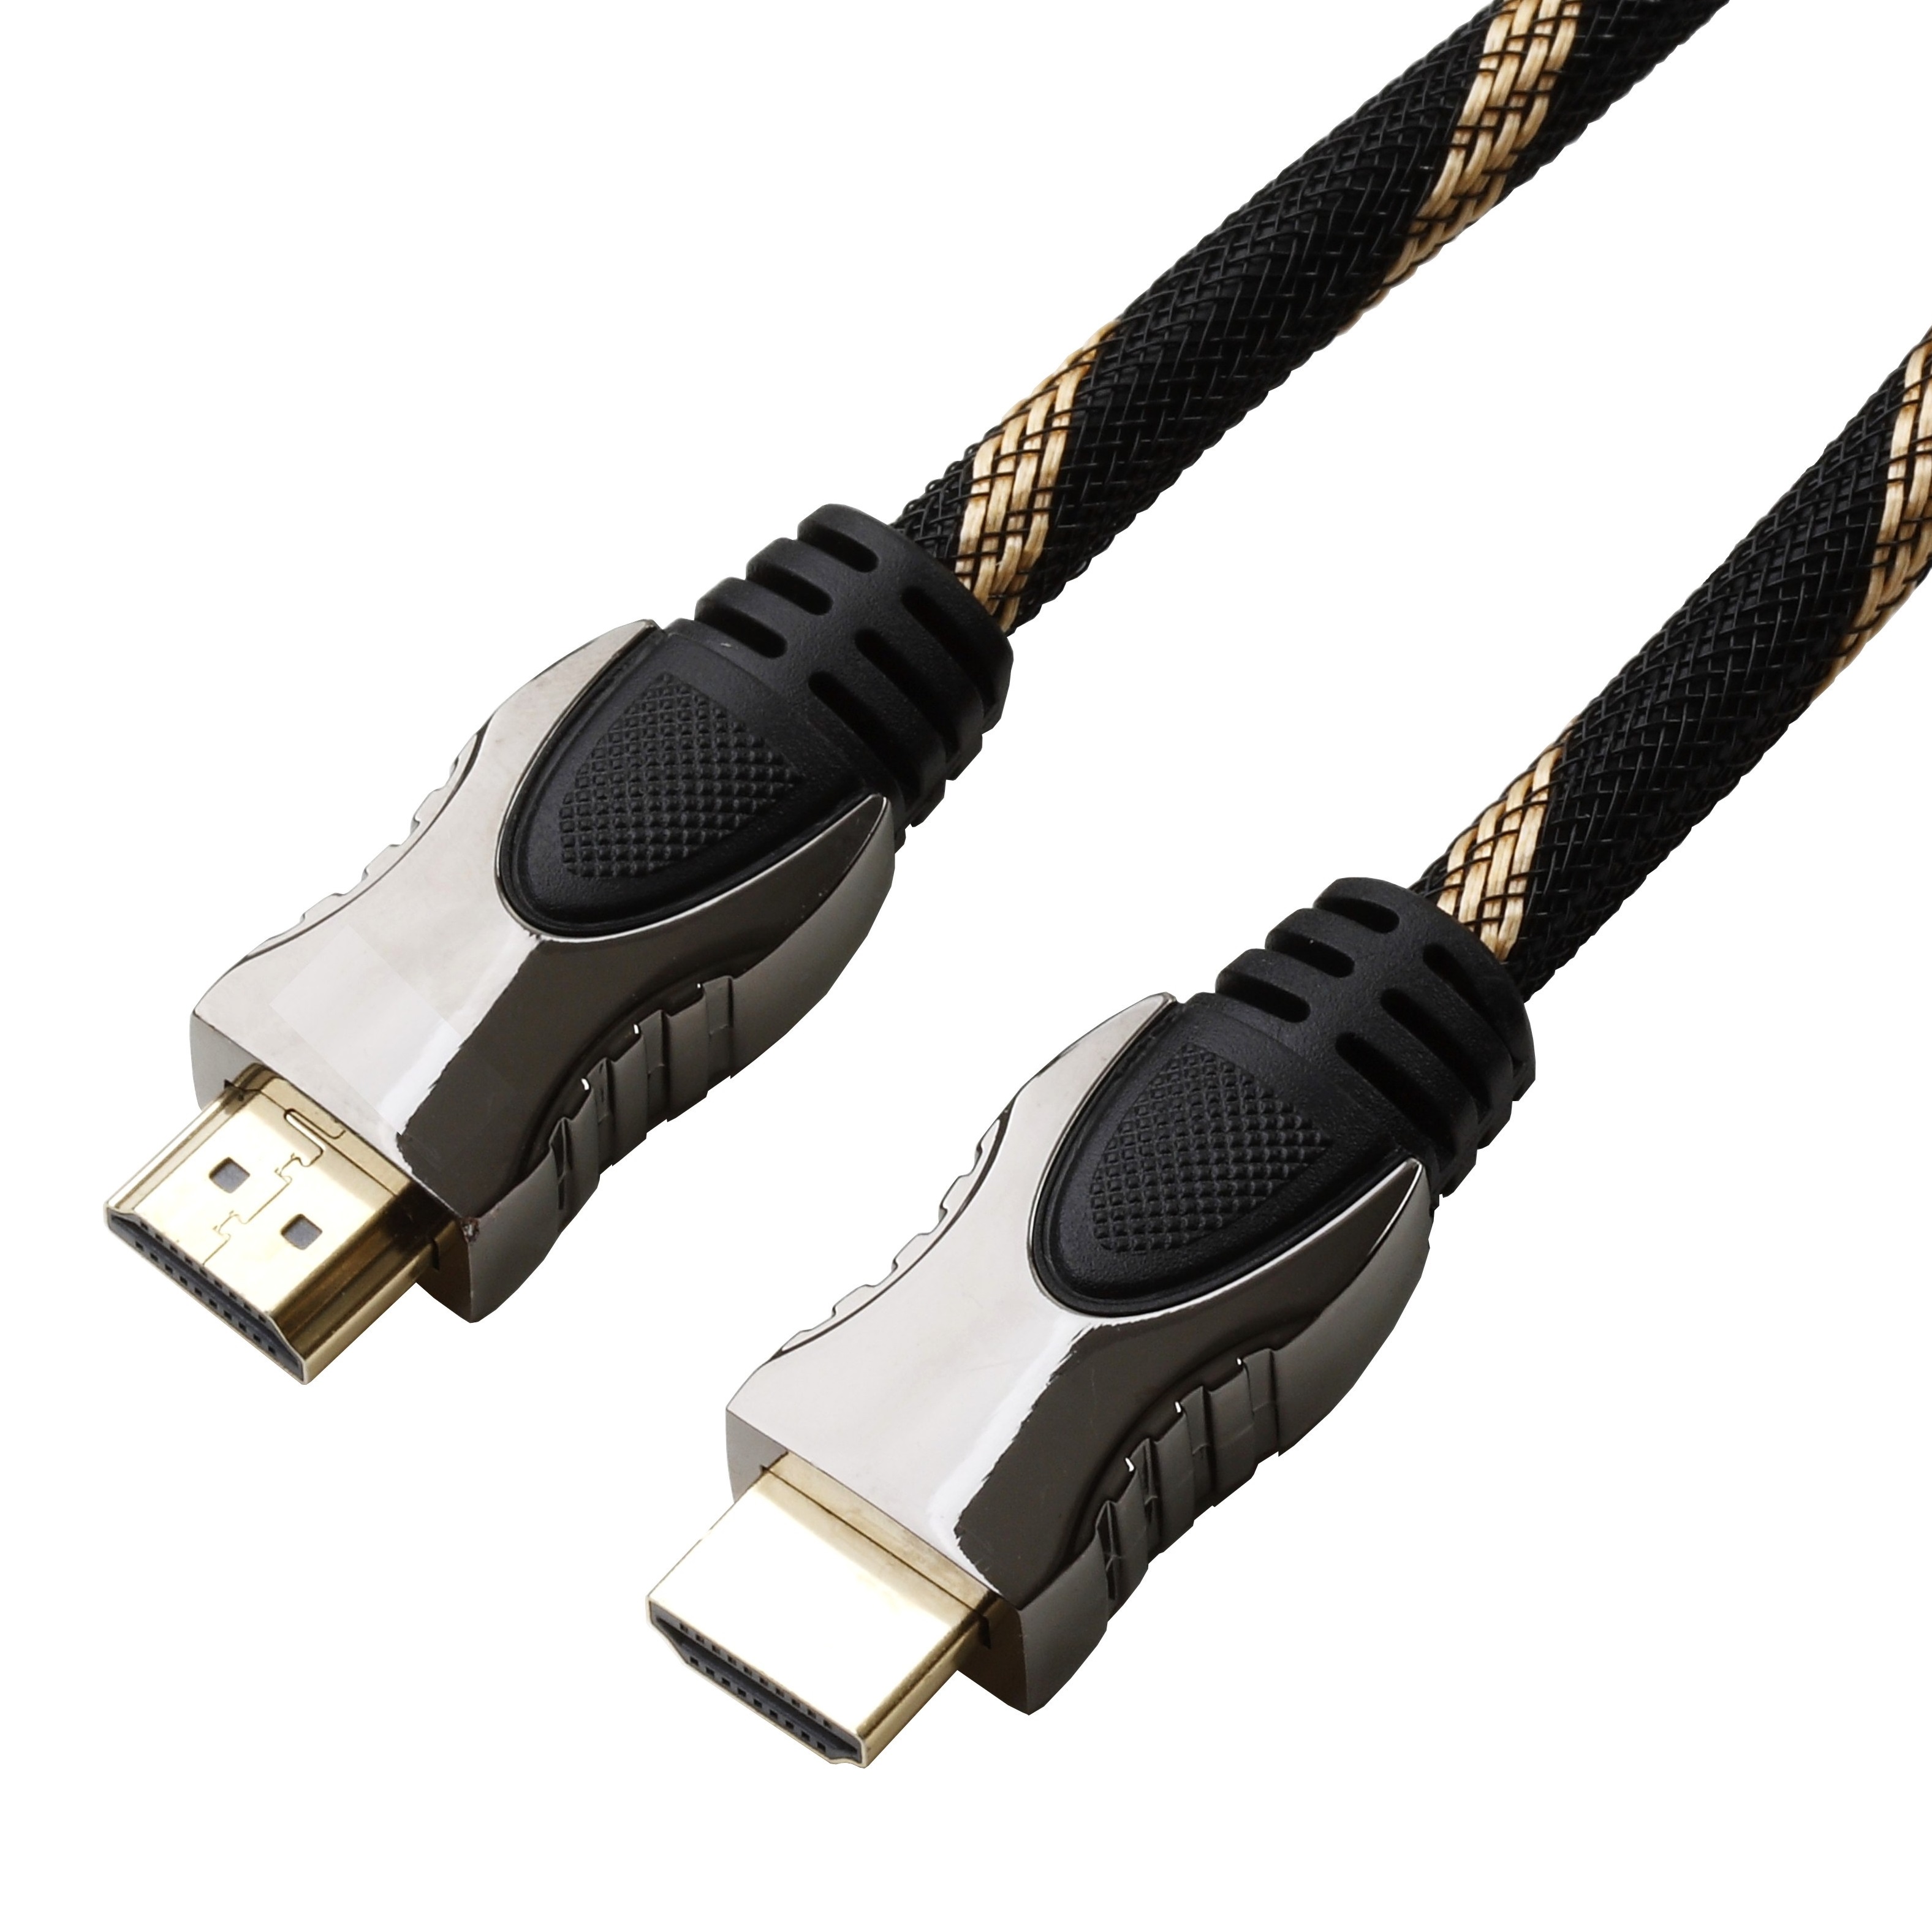 Reekin HDMI Kabel High Speed with Ethernet 15,0 Meter NEU 1,33€/m FULL HD 